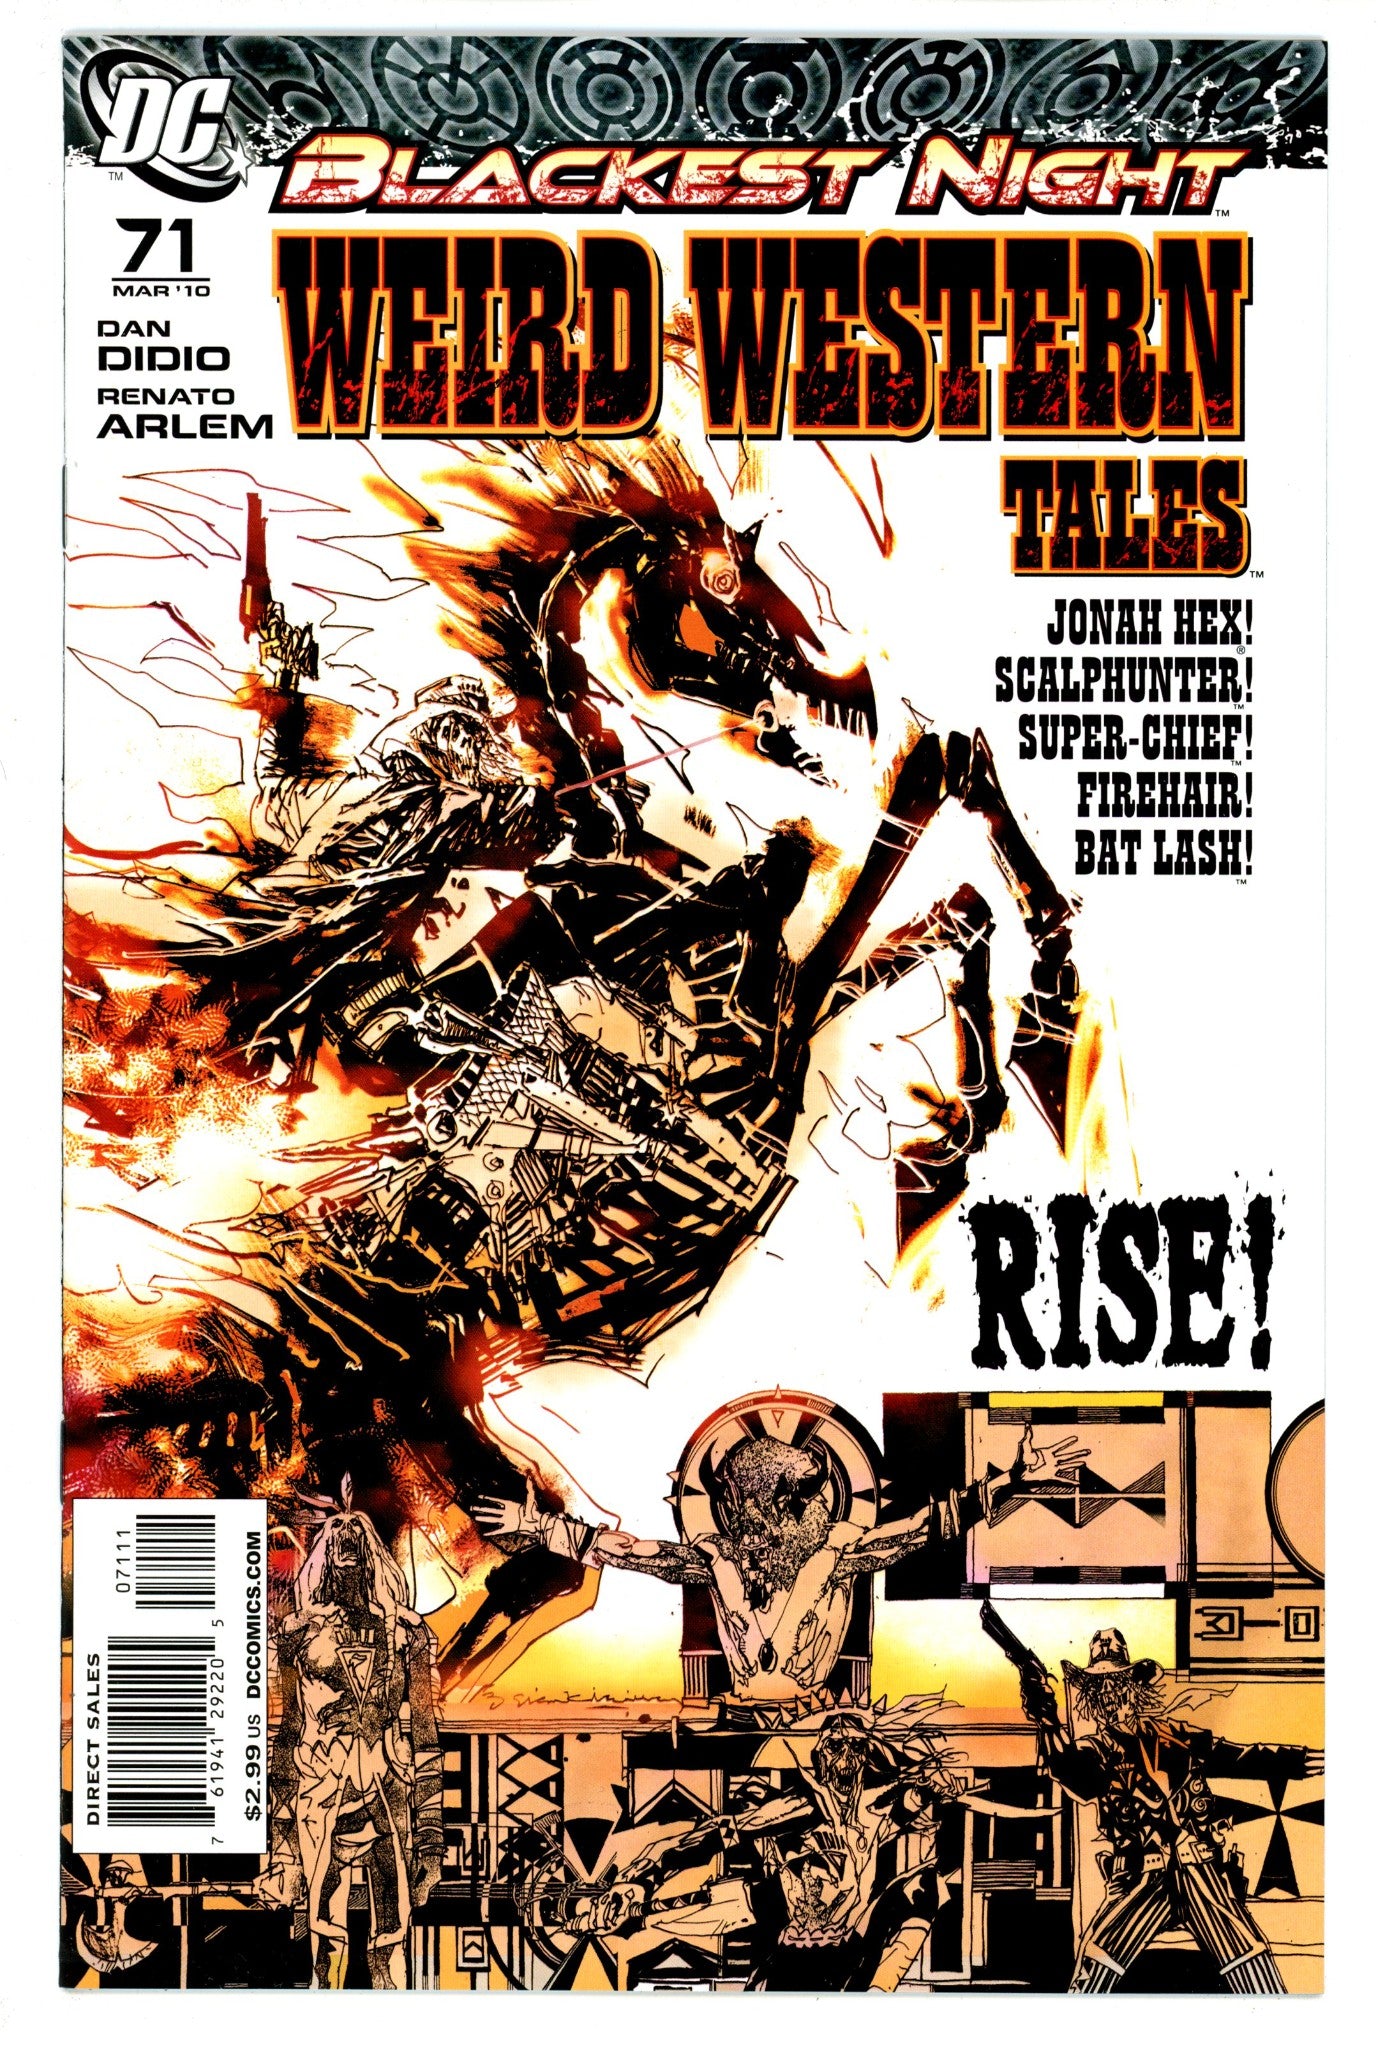 Weird Western Tales Vol 1 71 High Grade (2010) 